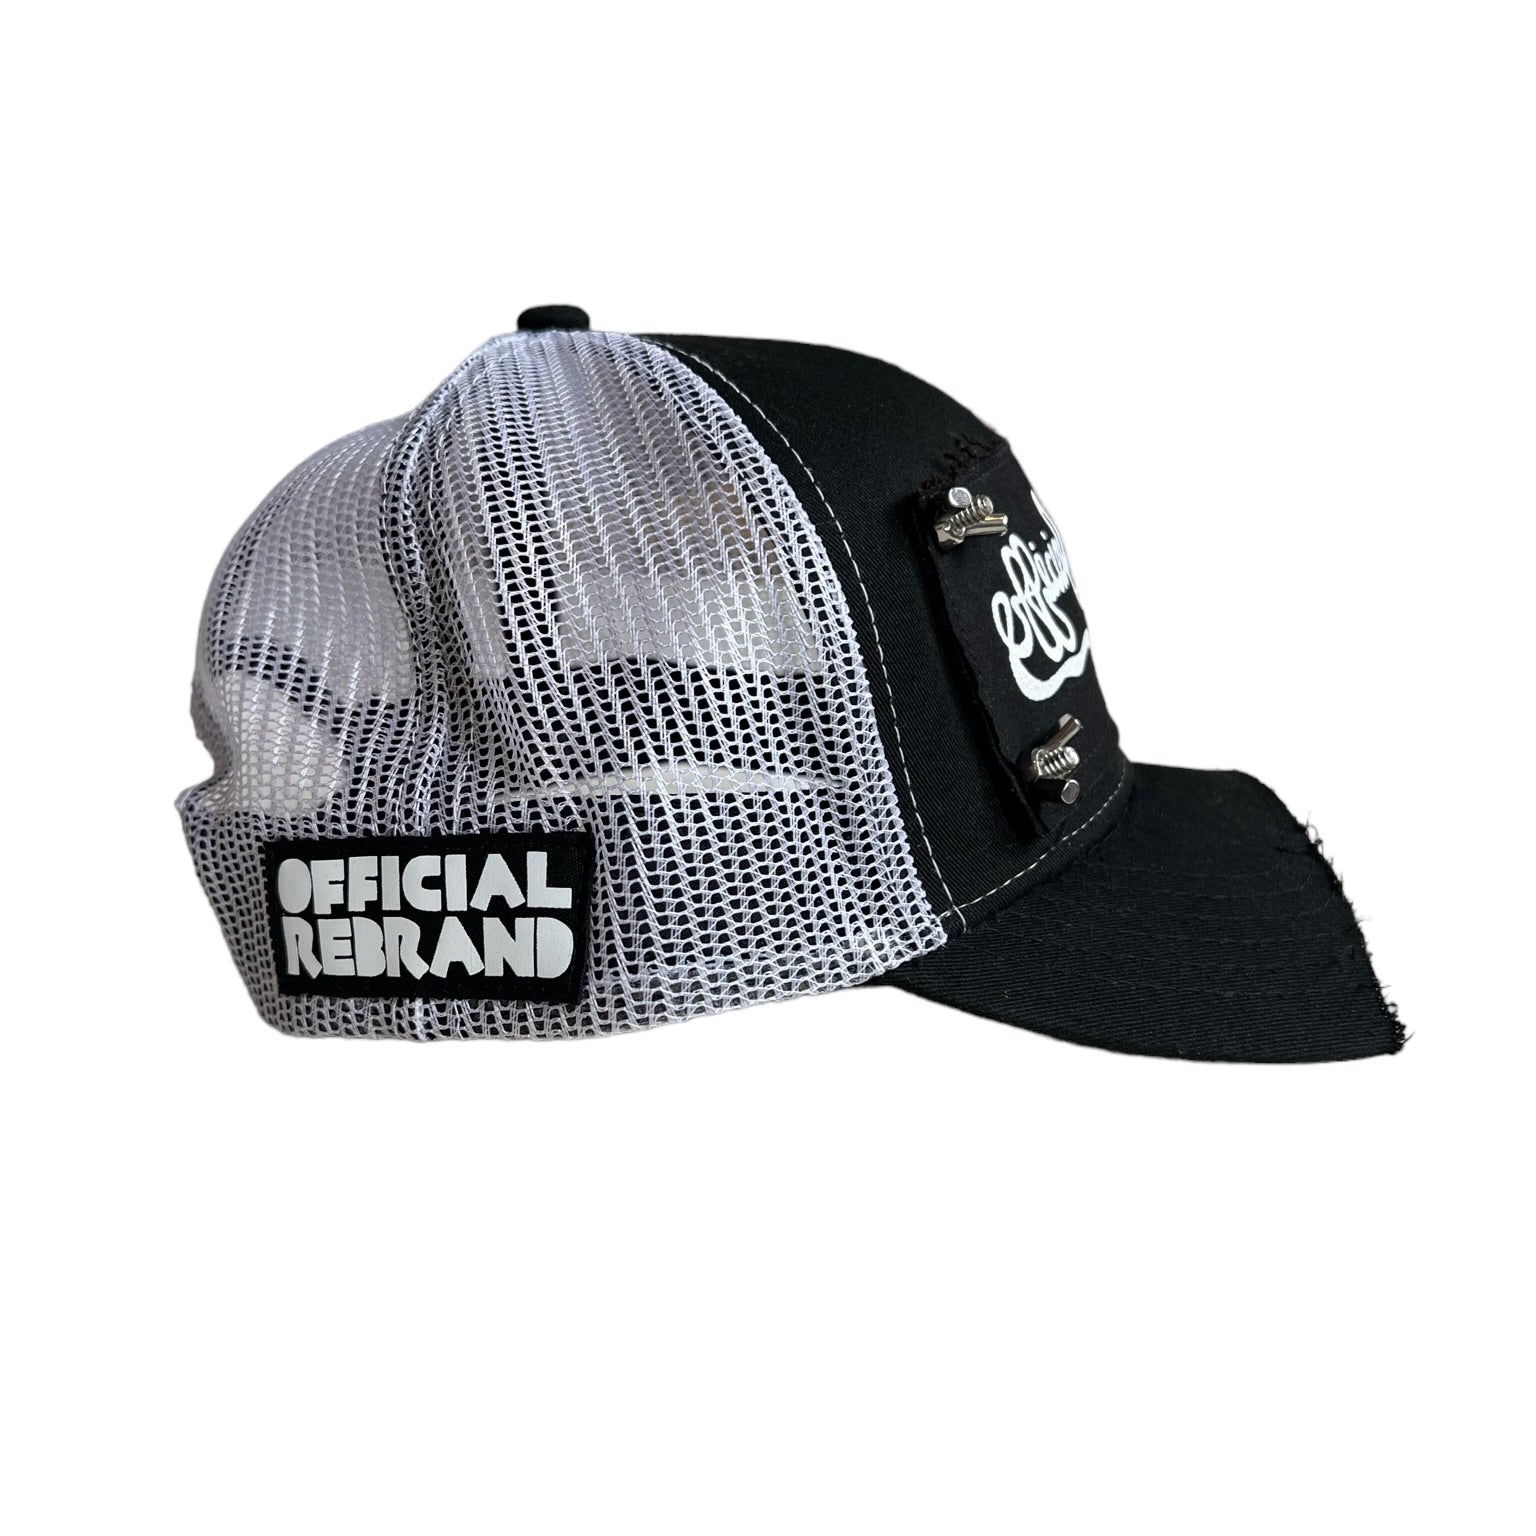 OFFICIAL REBRAND SNAKE trucker hat